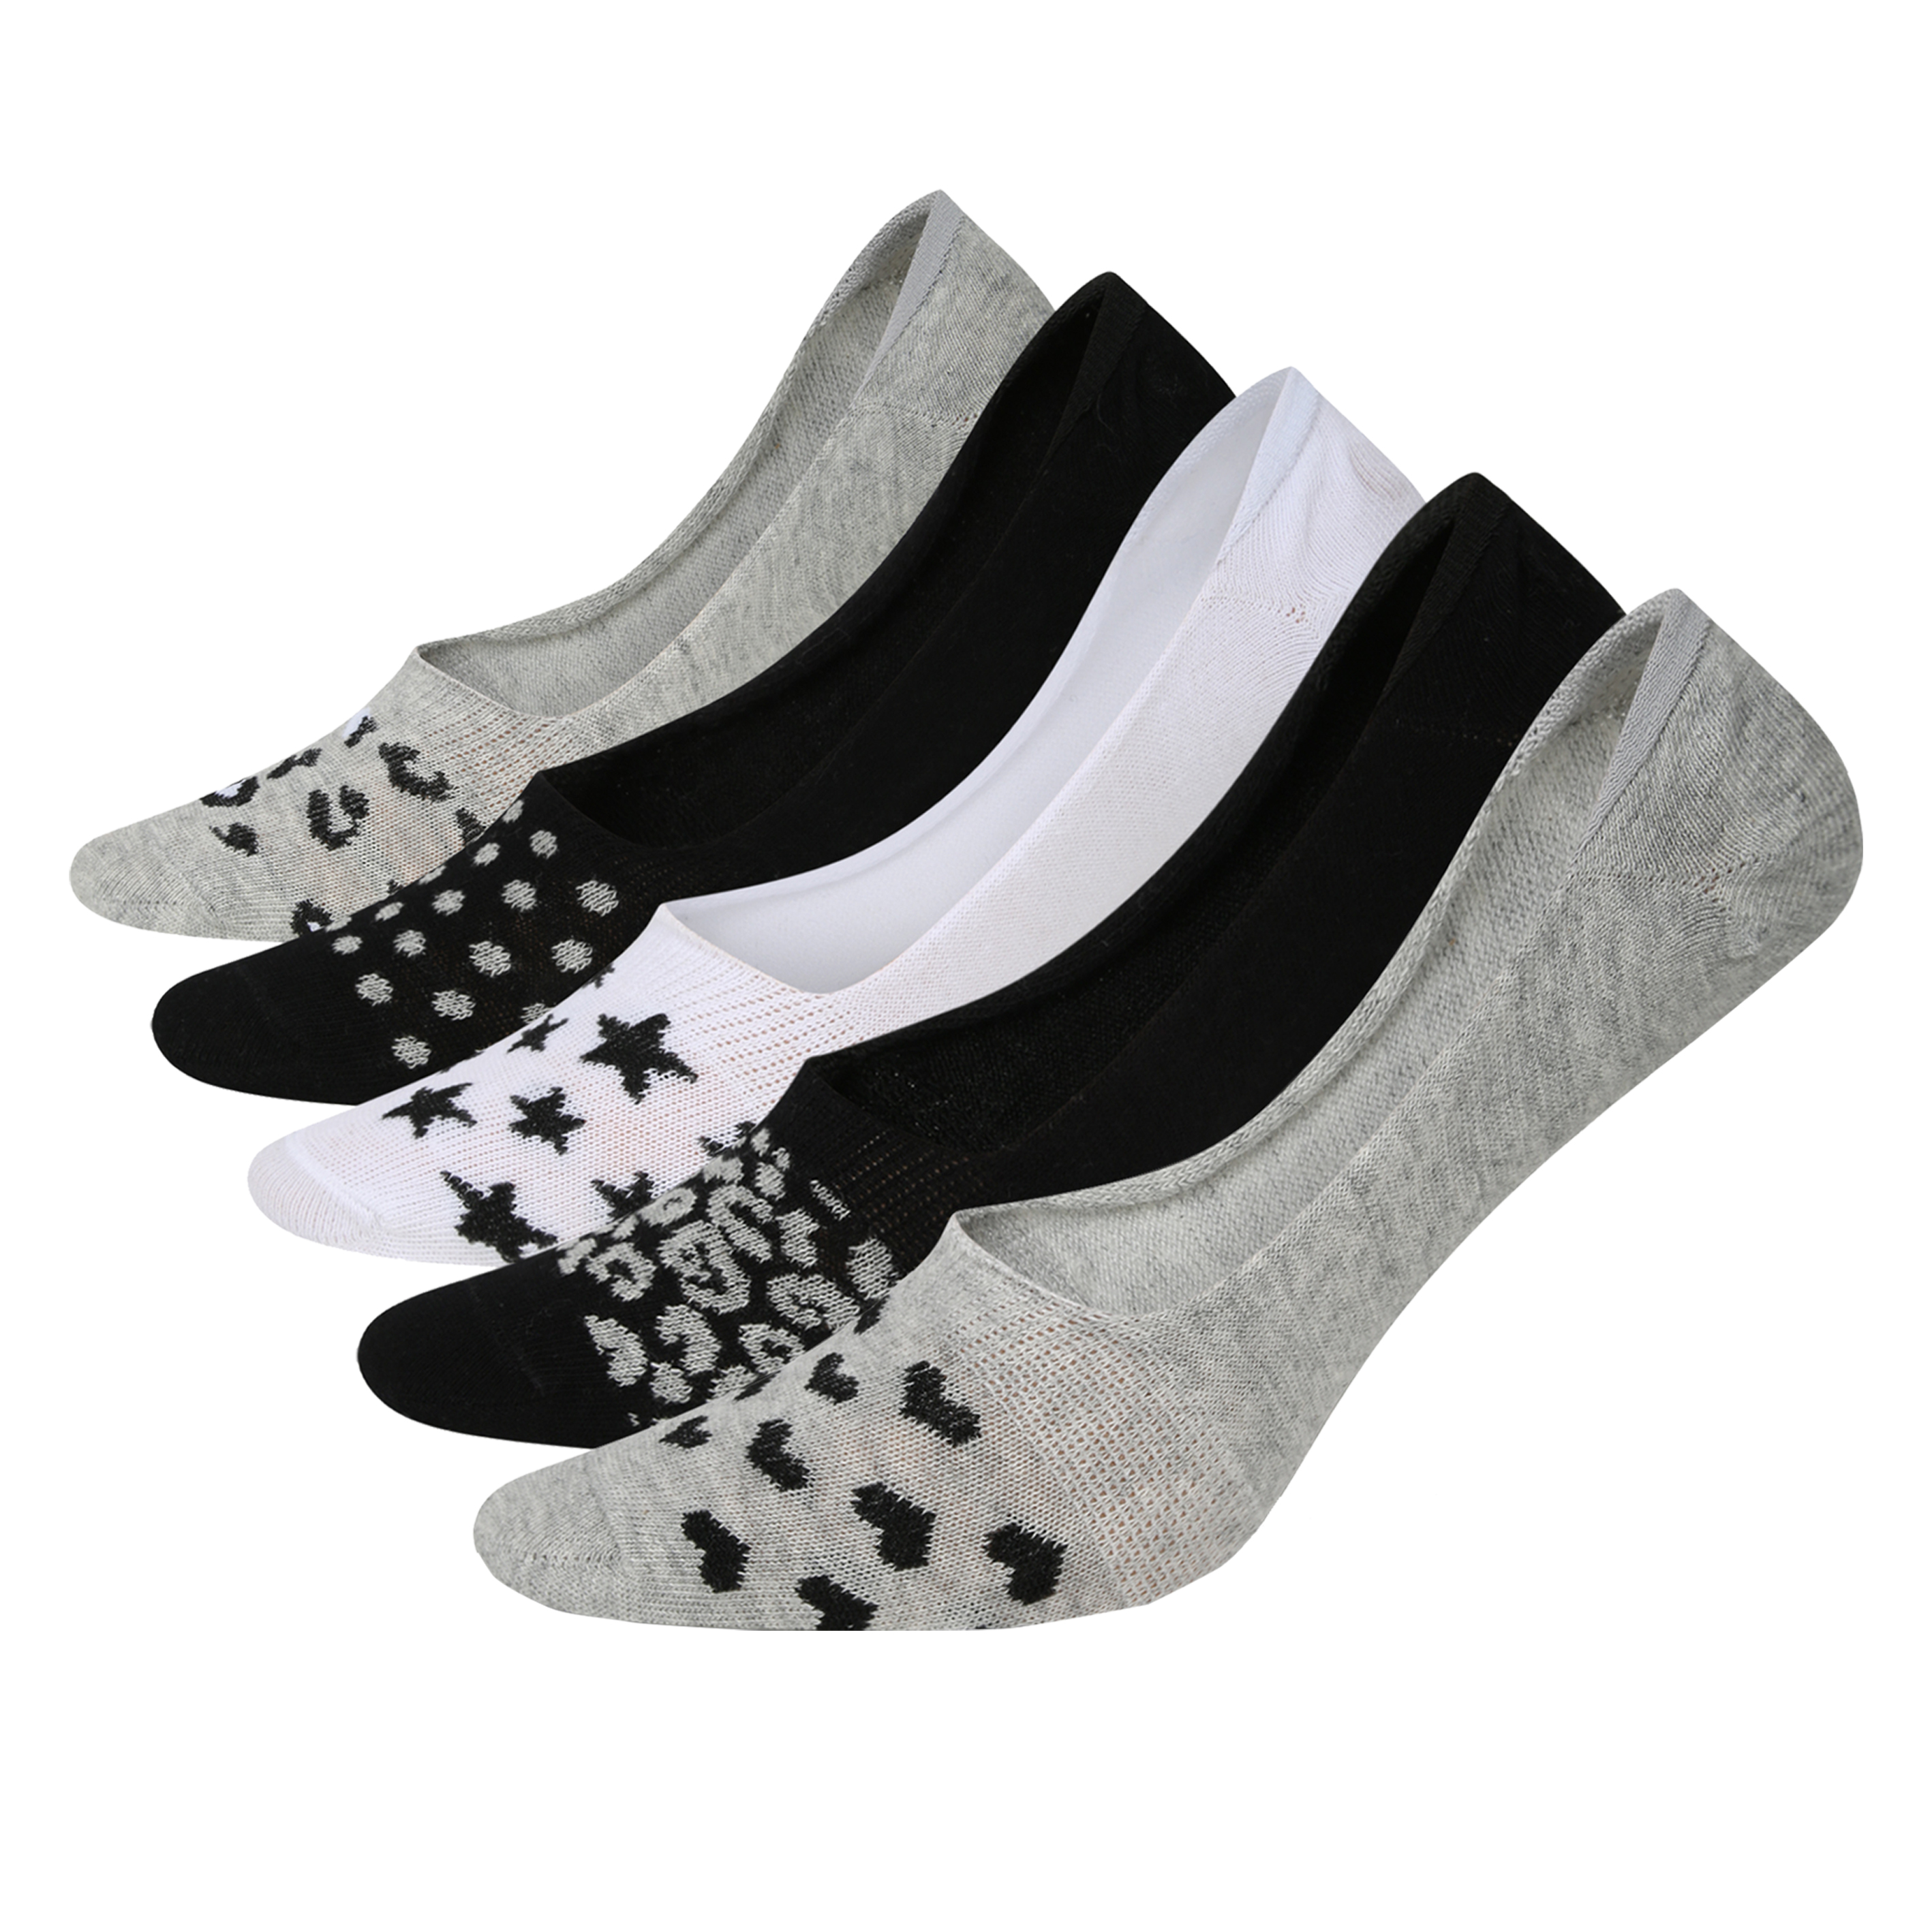 6 x Ladies Women Cotton Rich Design Pattern Trainer Socks 